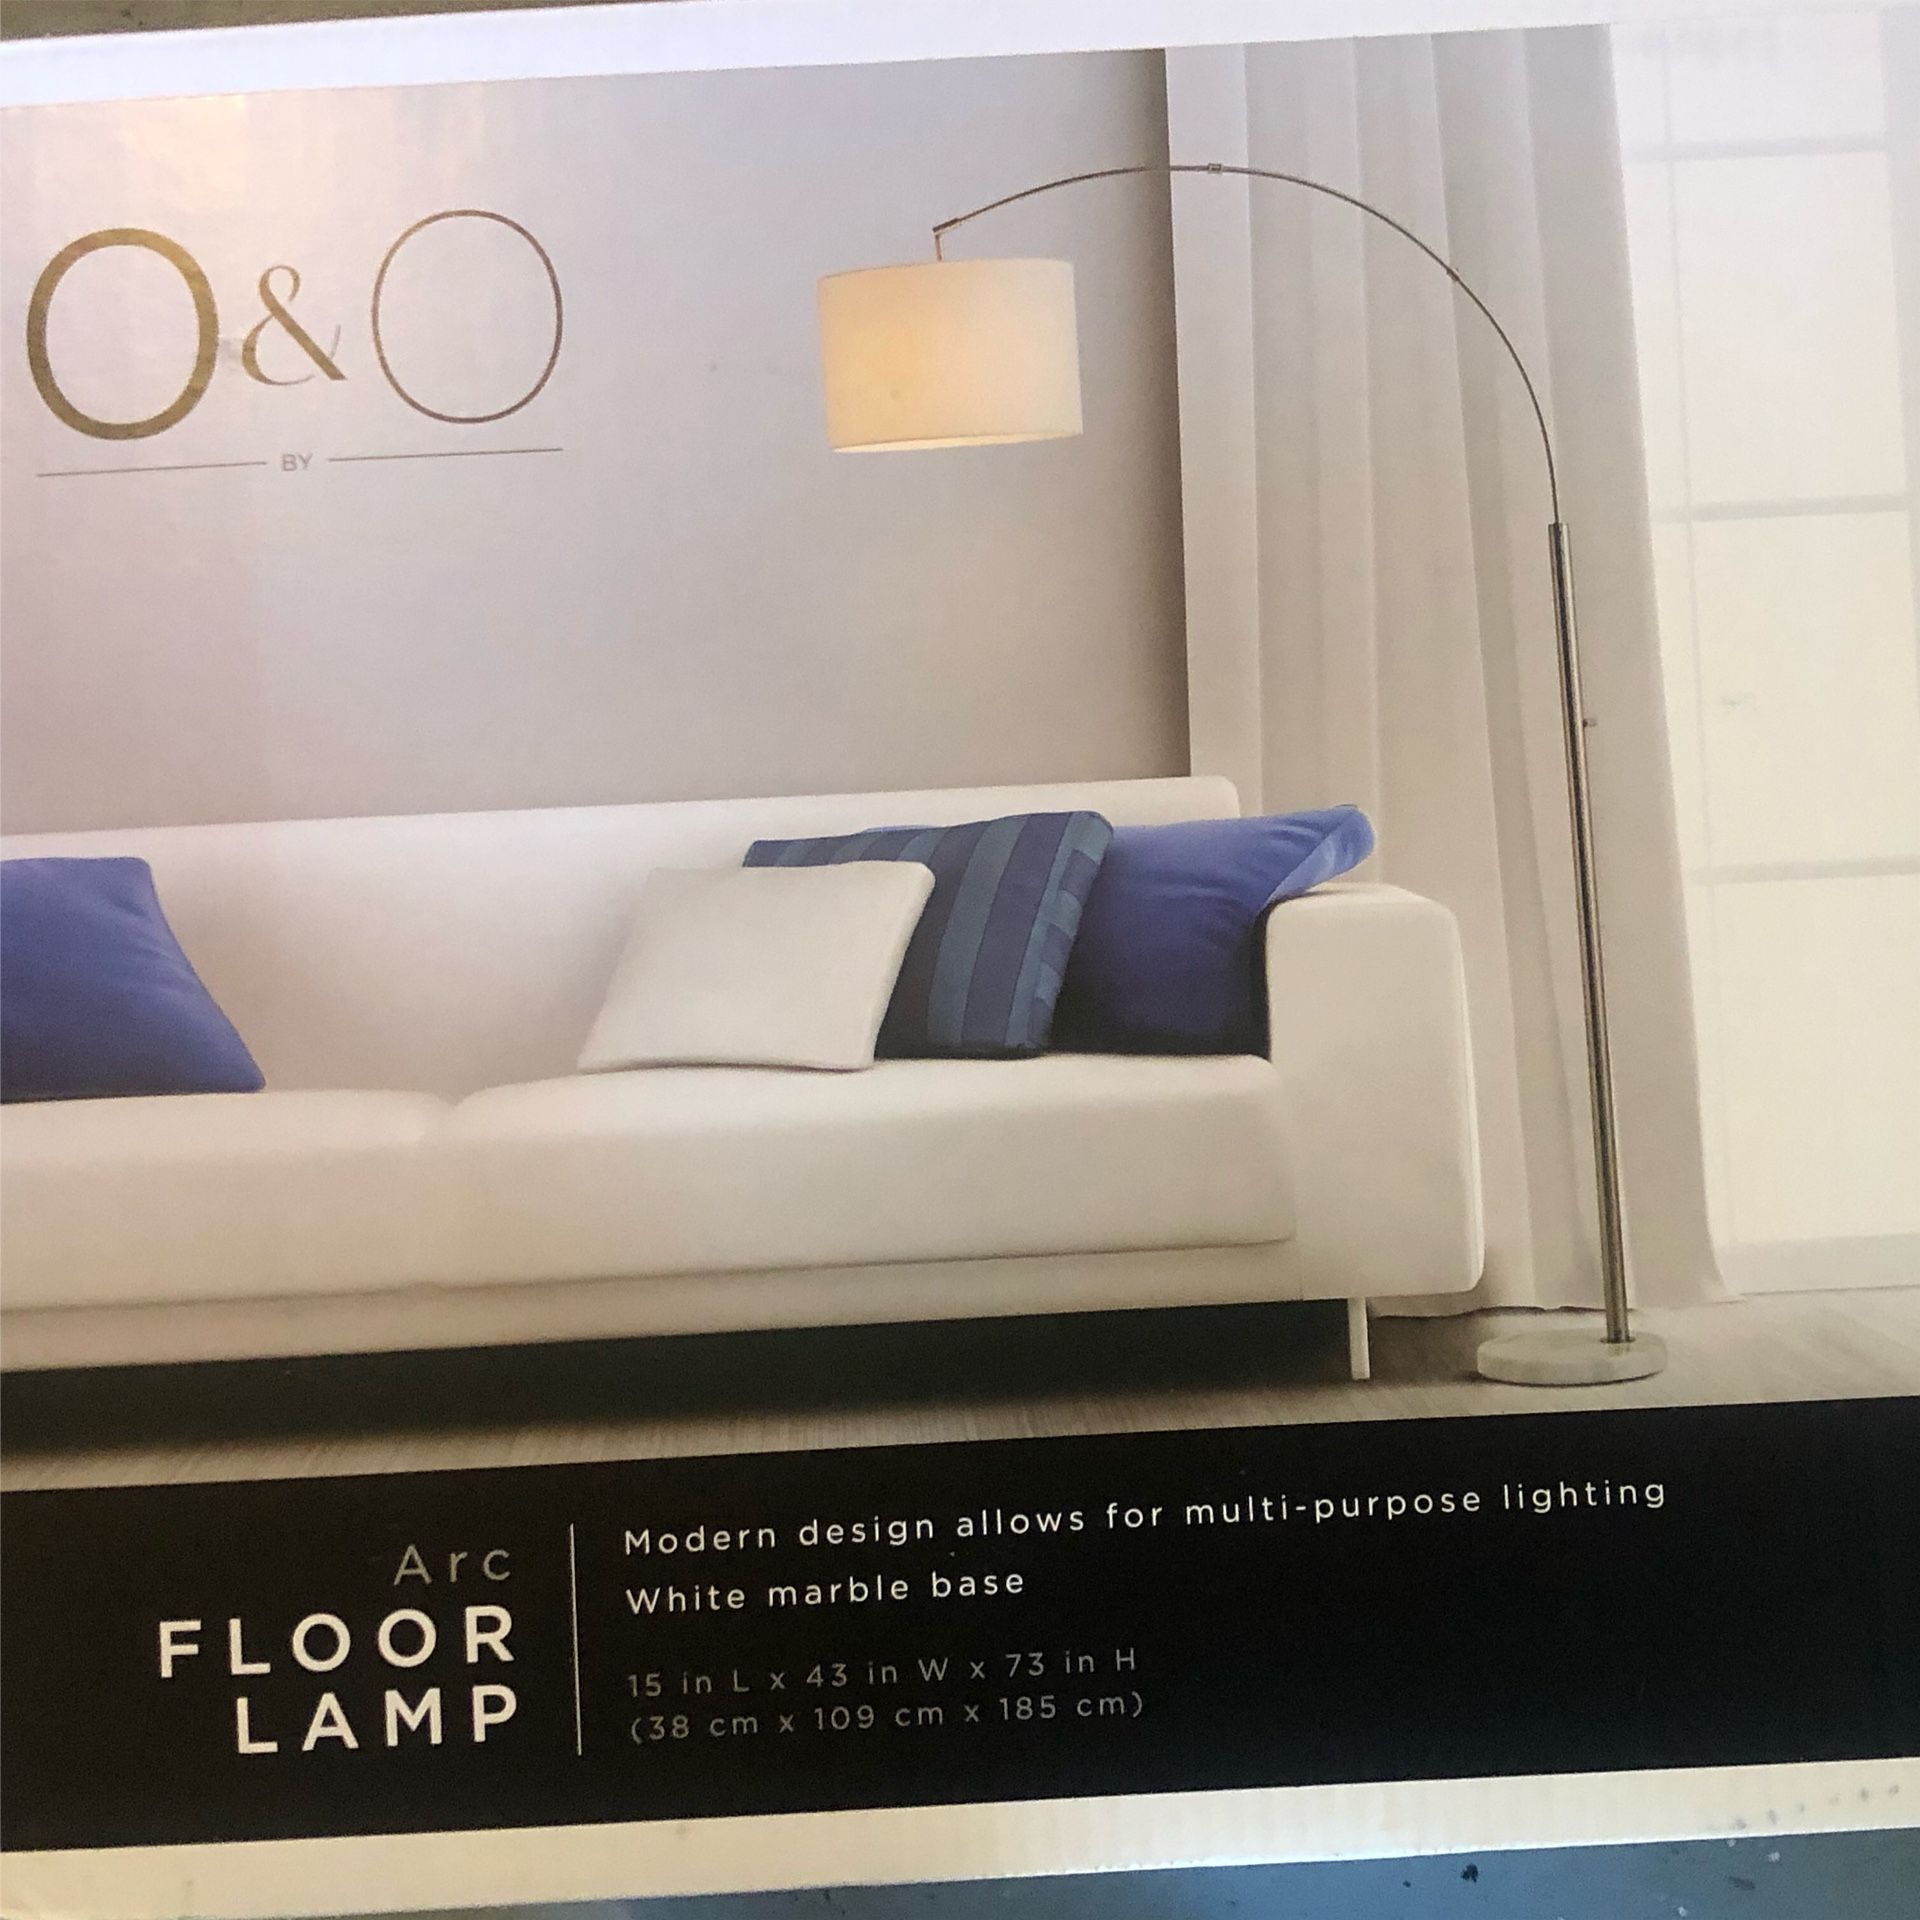 O&O Arc Floor Lamp